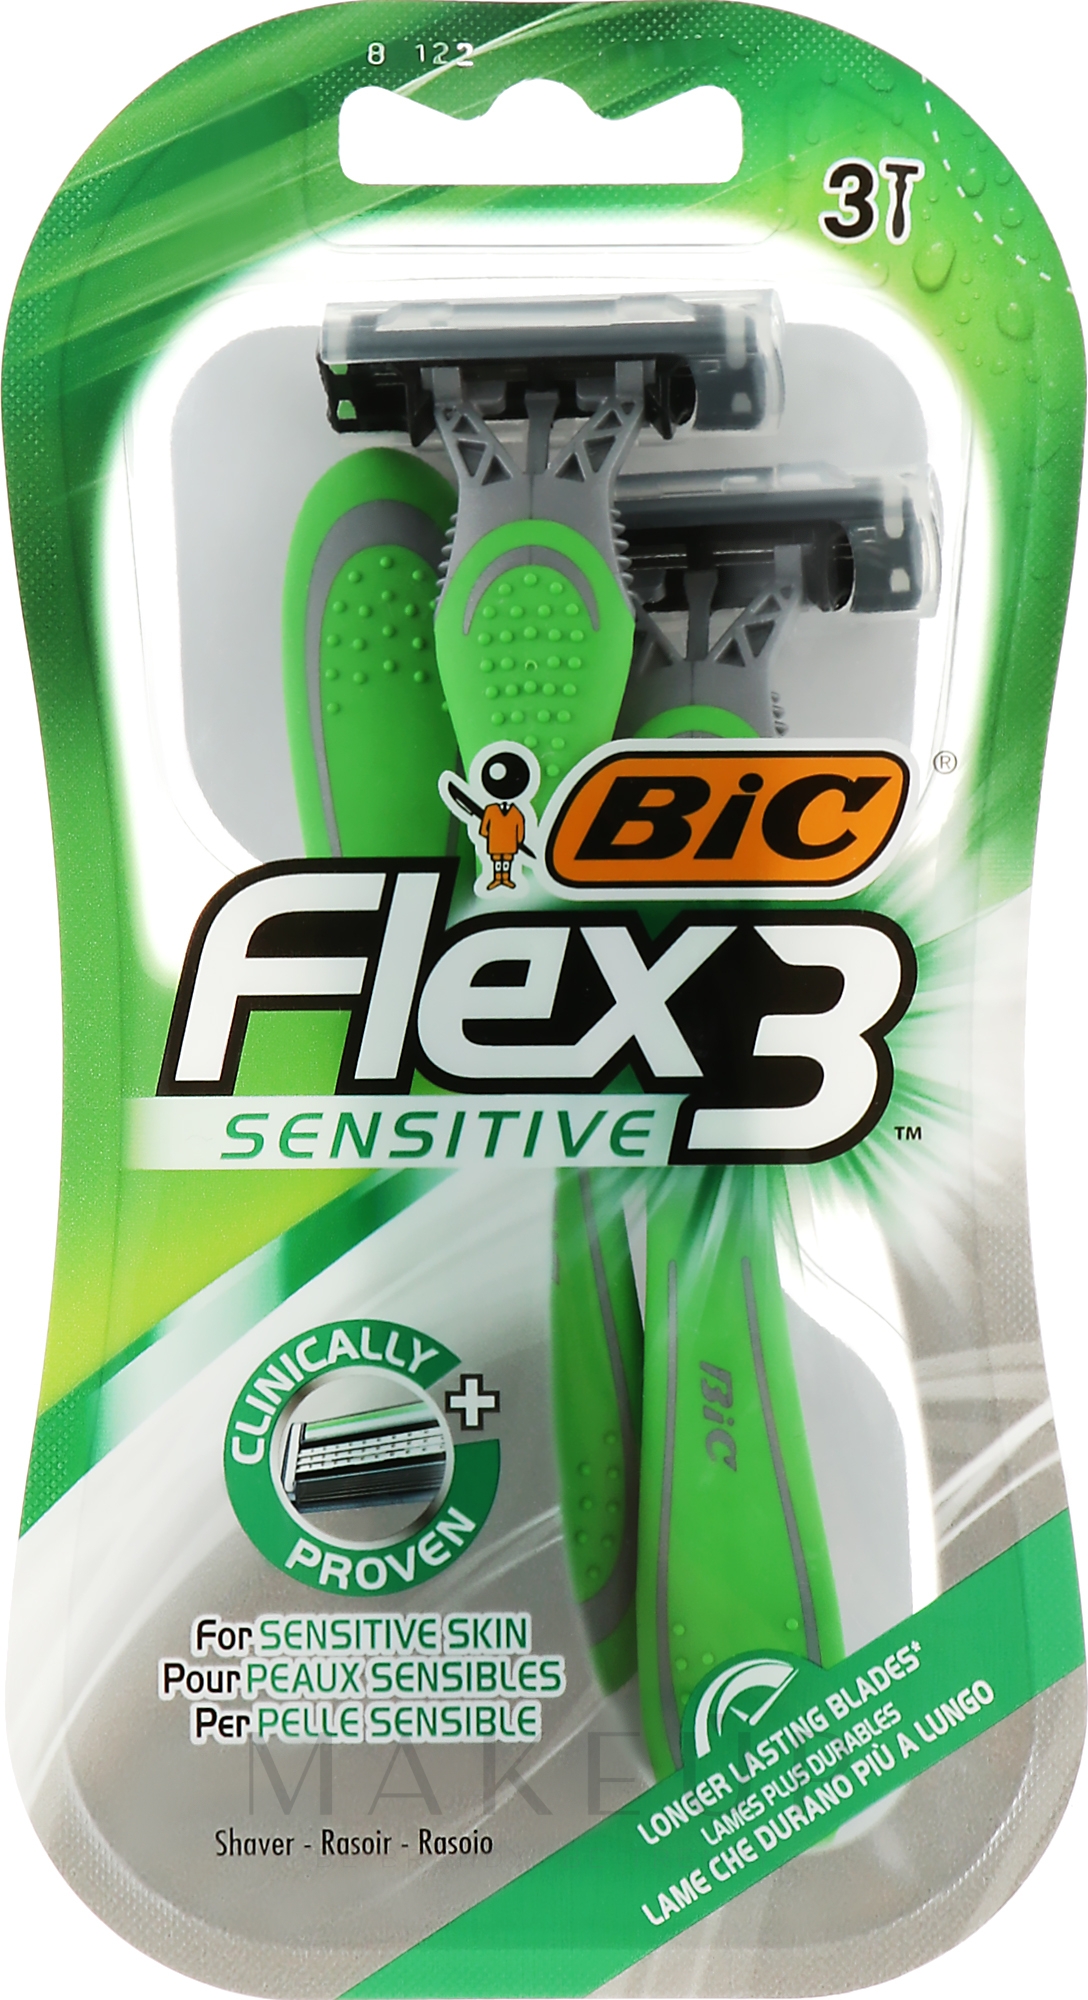 Männerrasierer für empfindliche Haut - Bic Flex 3 Sensitive — Bild 3 St.